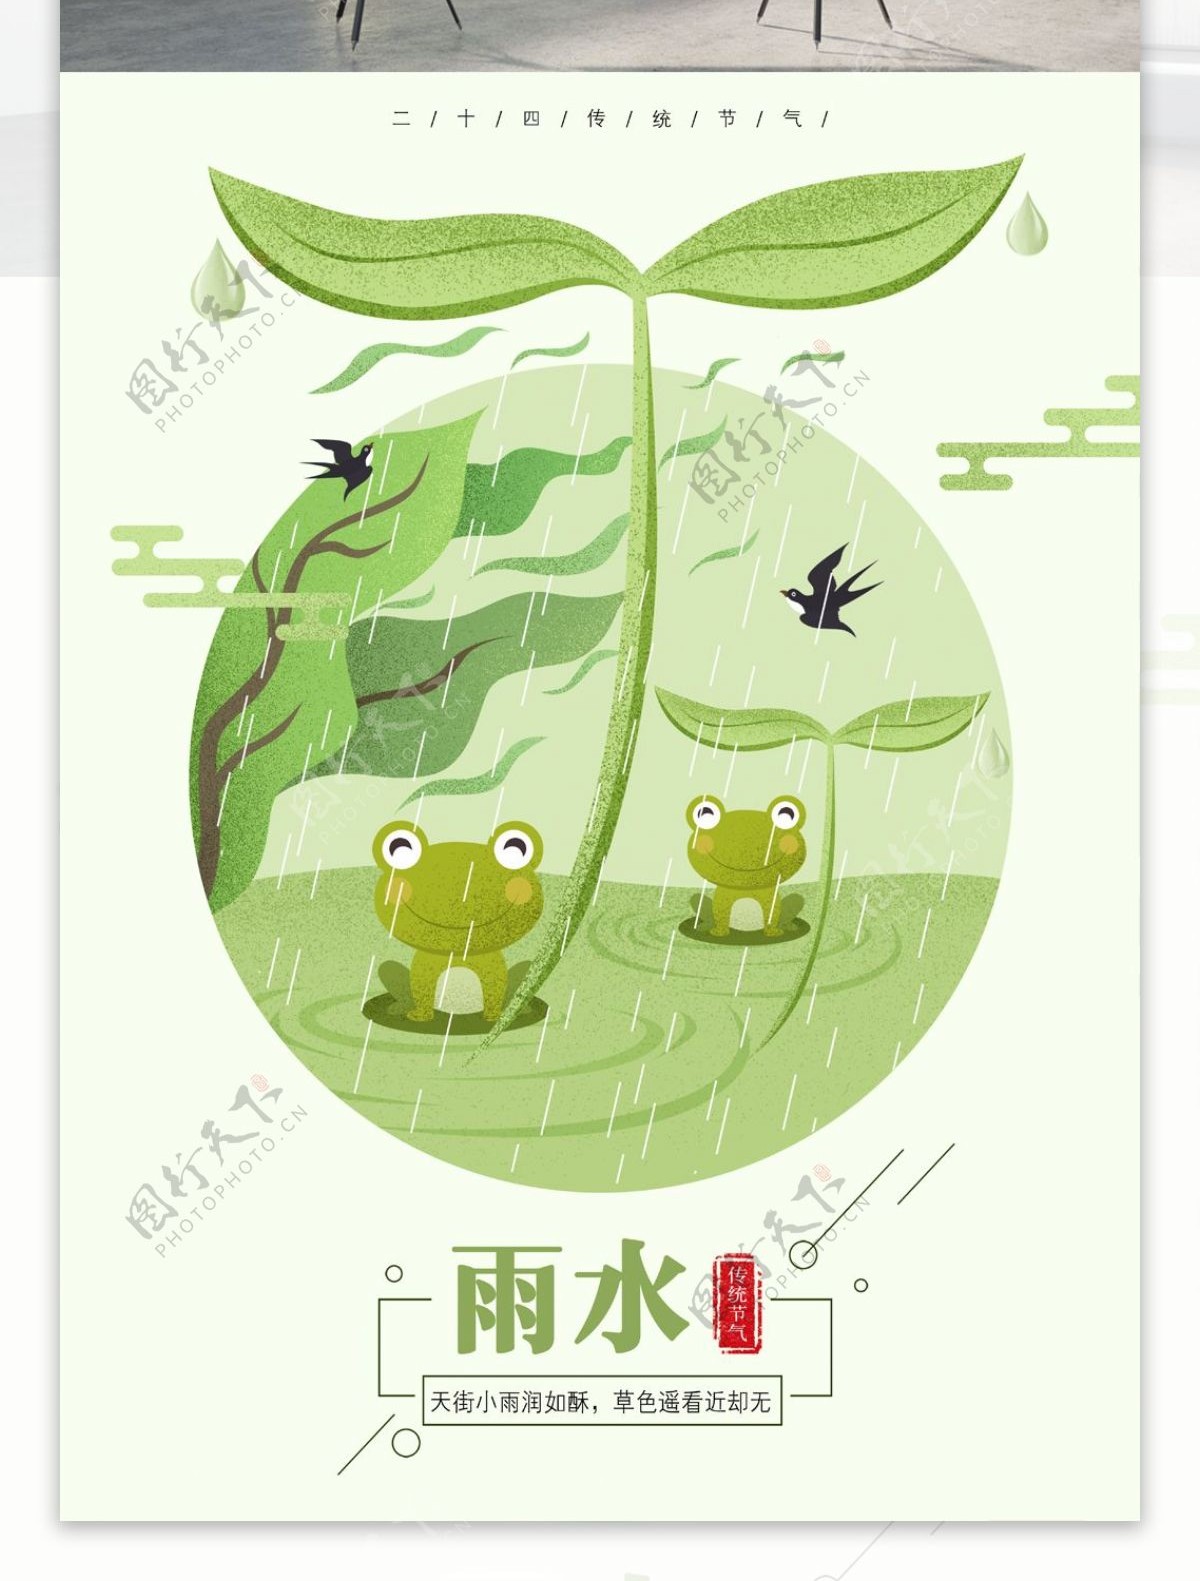 二十四节气绿色春意雨水原创手绘海报